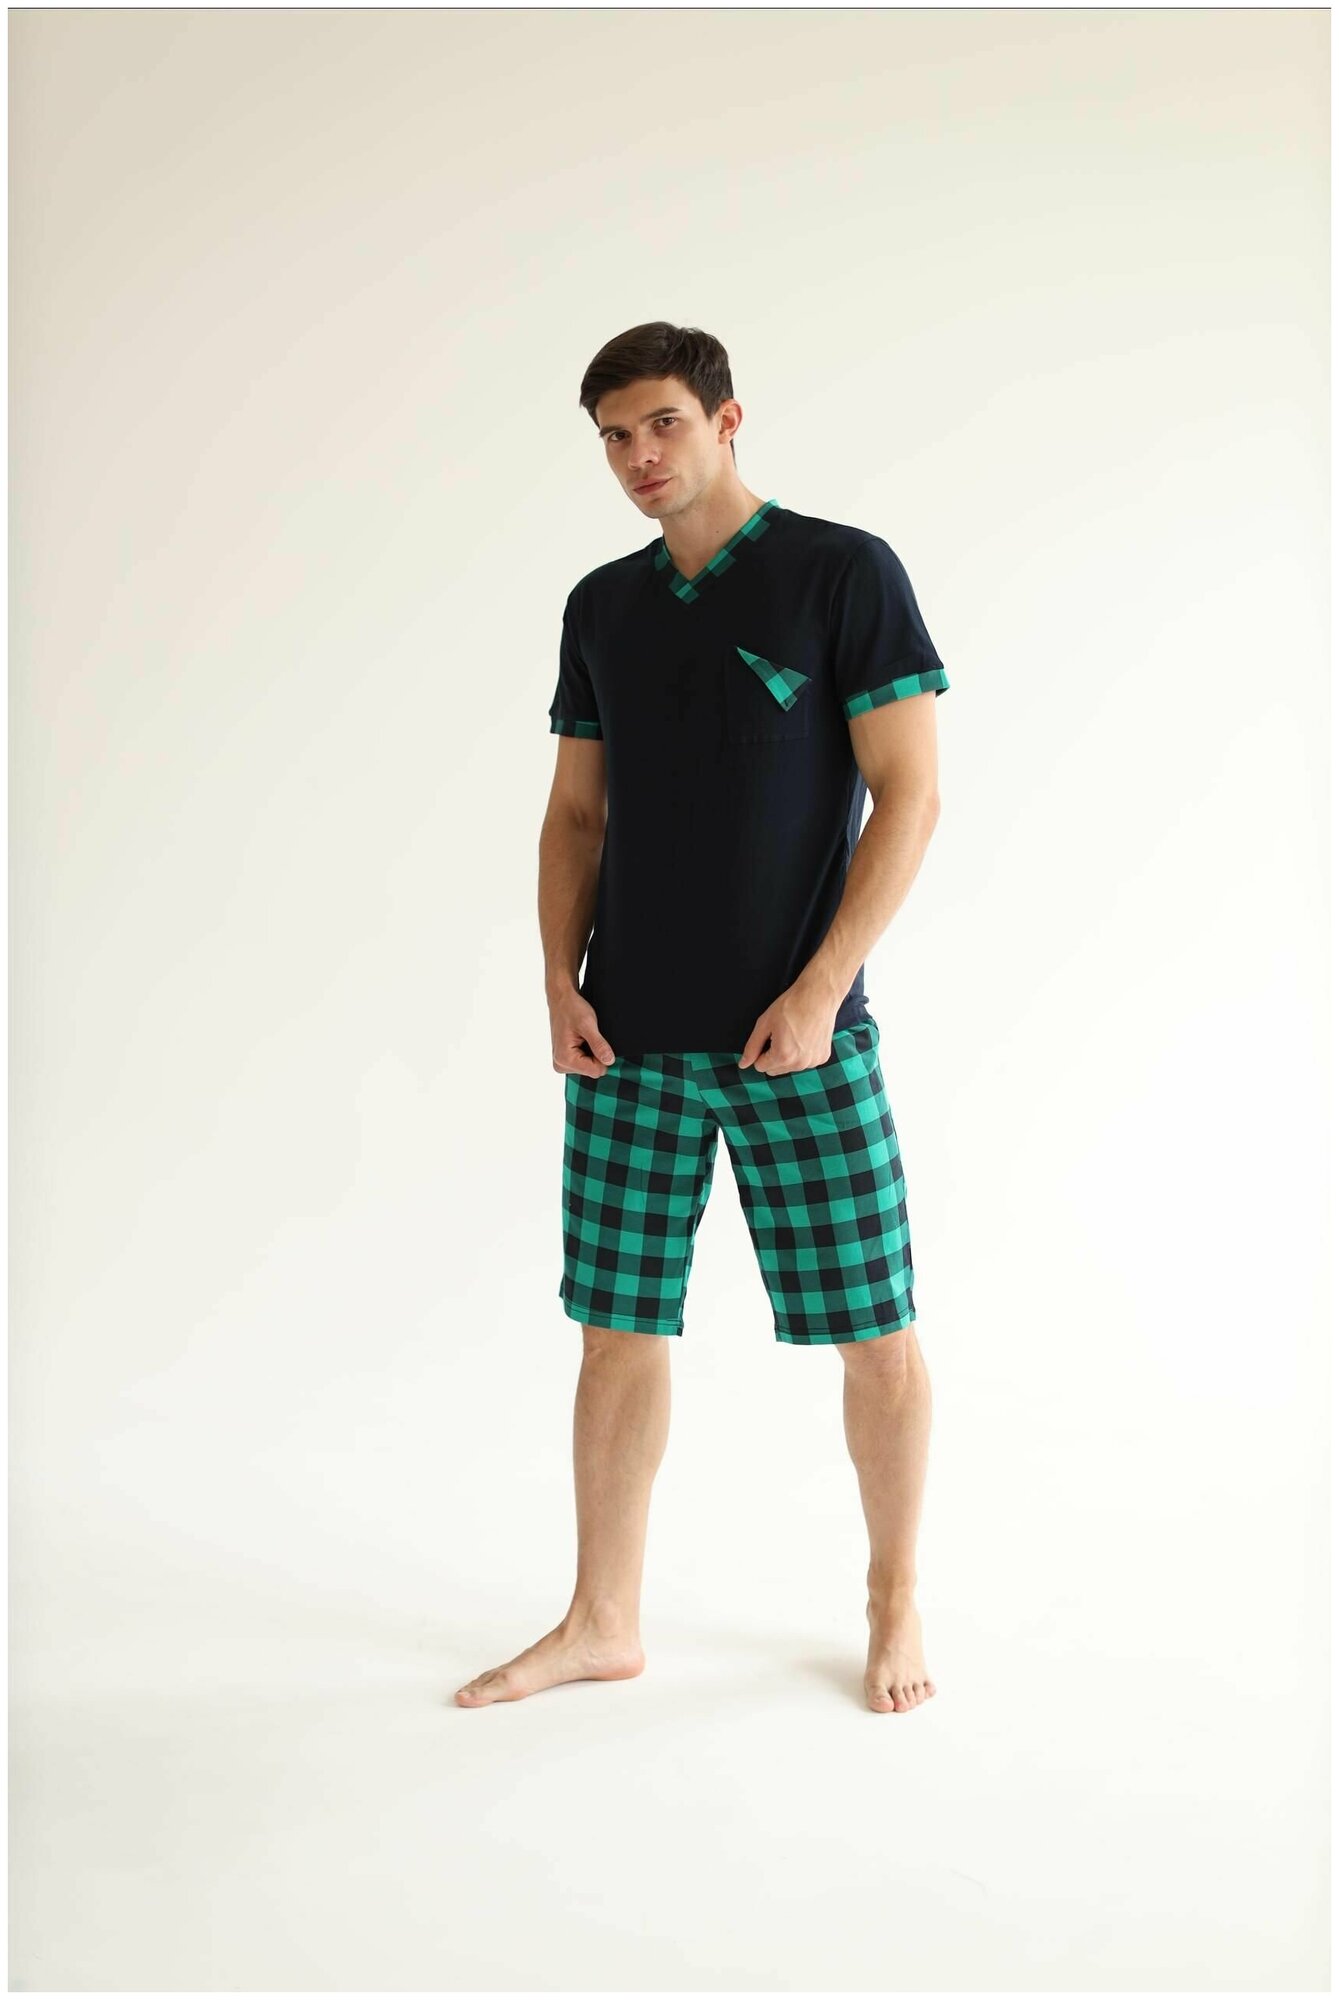 Домашний костюм, пижама мужская, комплект одежды для дома, шорты мужские, футболка мужская DomTeks - фотография № 4